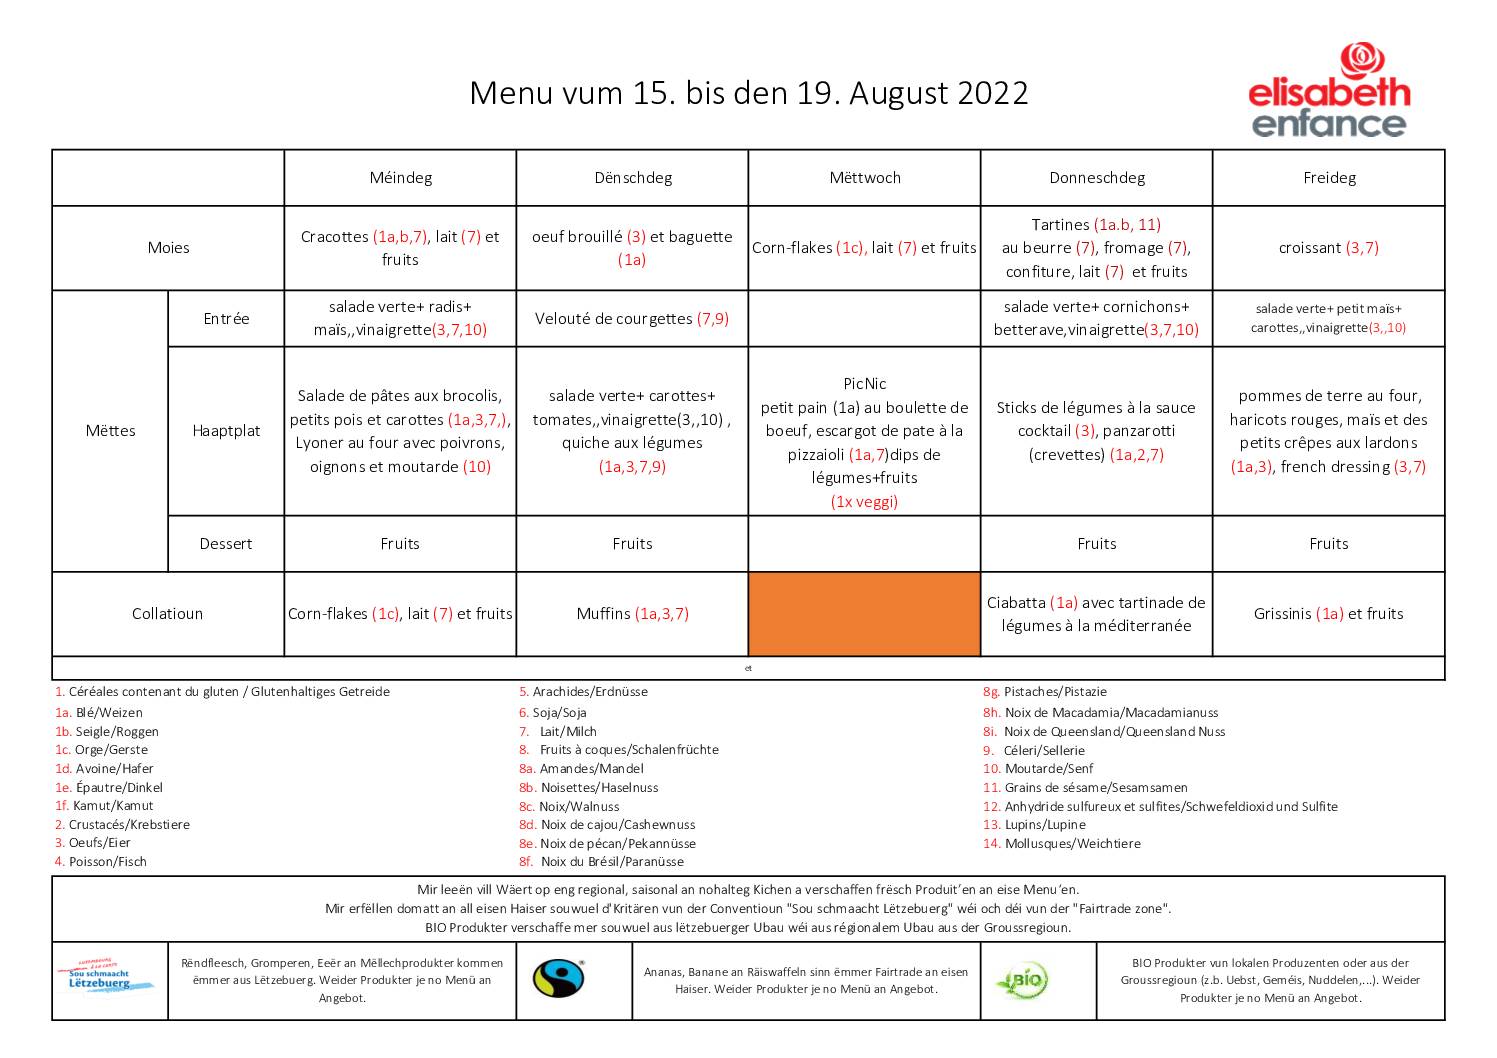 menus de la semaine du 15 au 19 août 2022